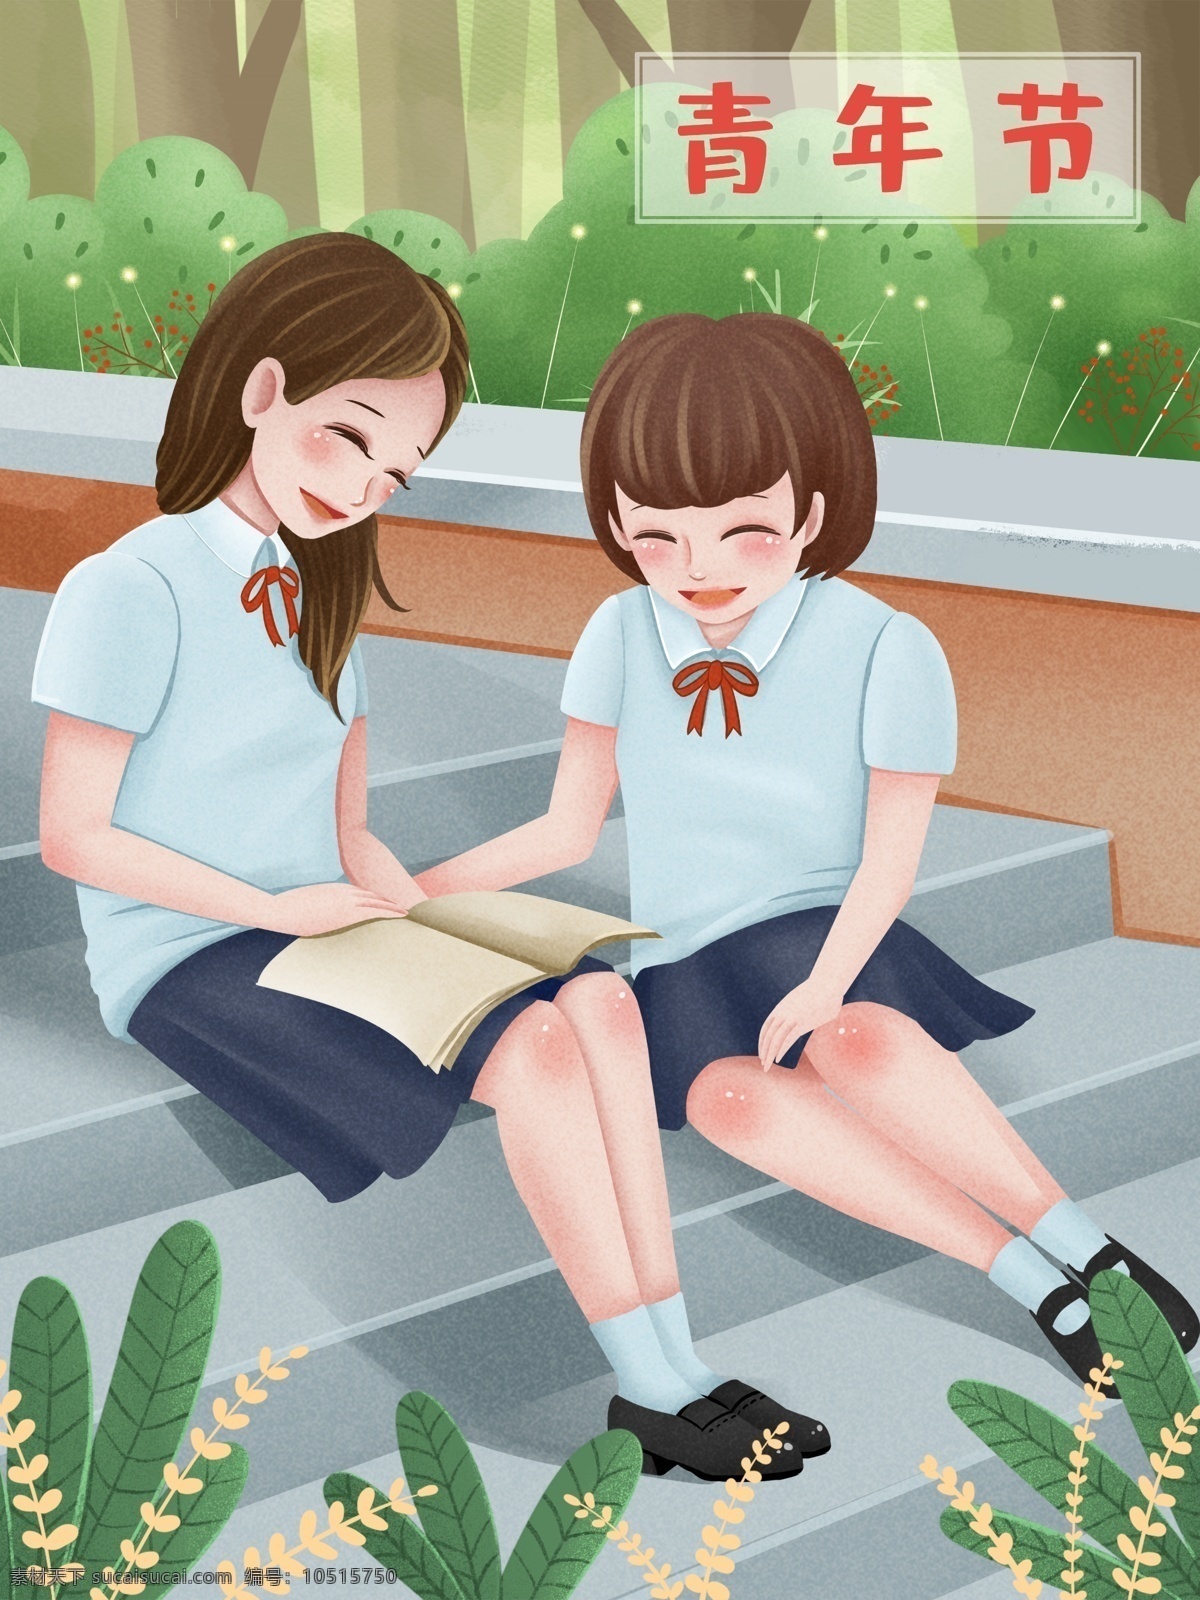 青年节 两个 穿 校服 女孩 看书 原创 插画 节日 女青年 青年 青春 学习 积极阳光 正能量 女生 学生 可爱女孩